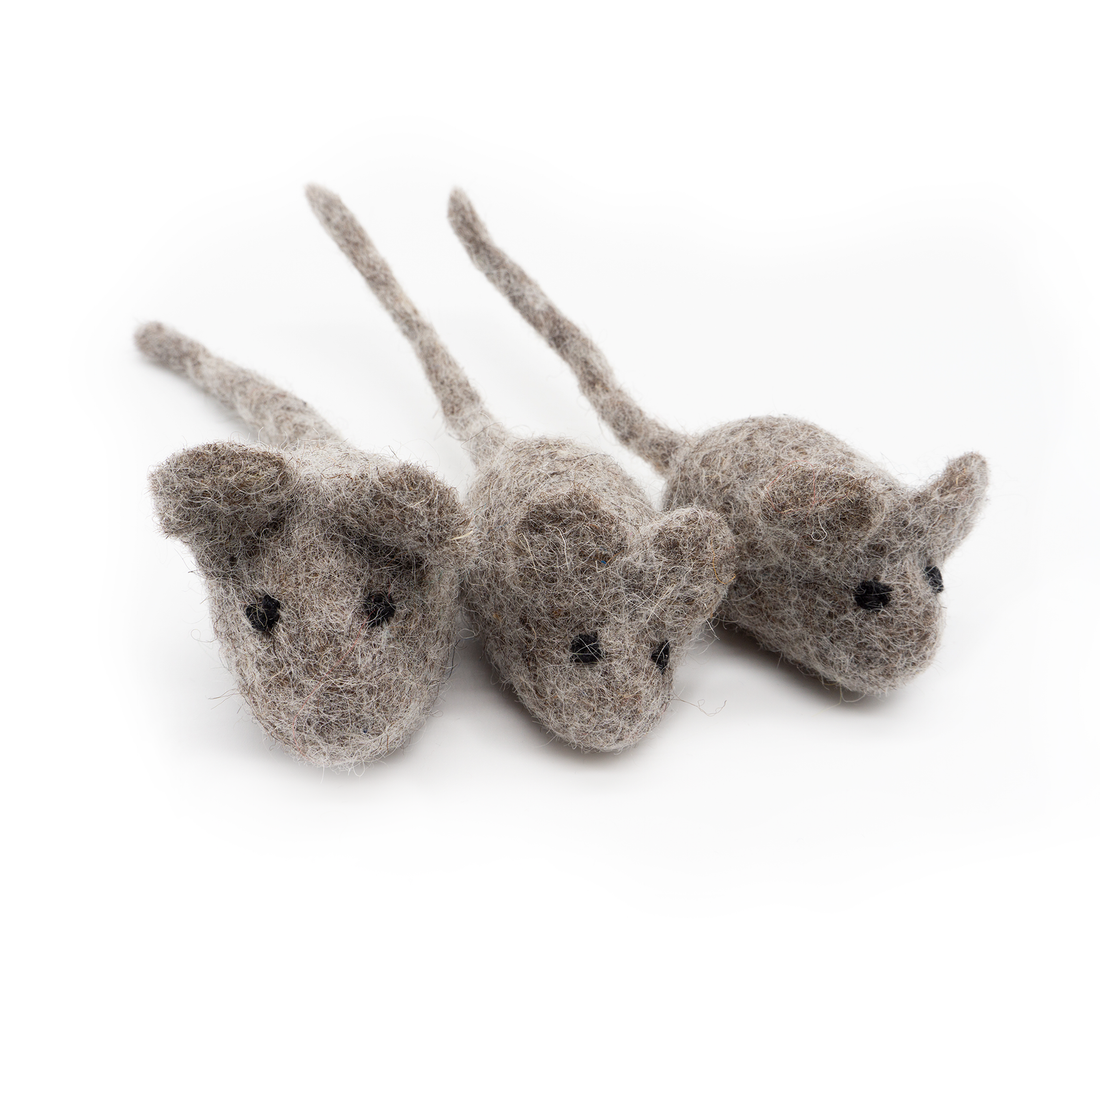 三隻小鼠 羊毛氈玩具